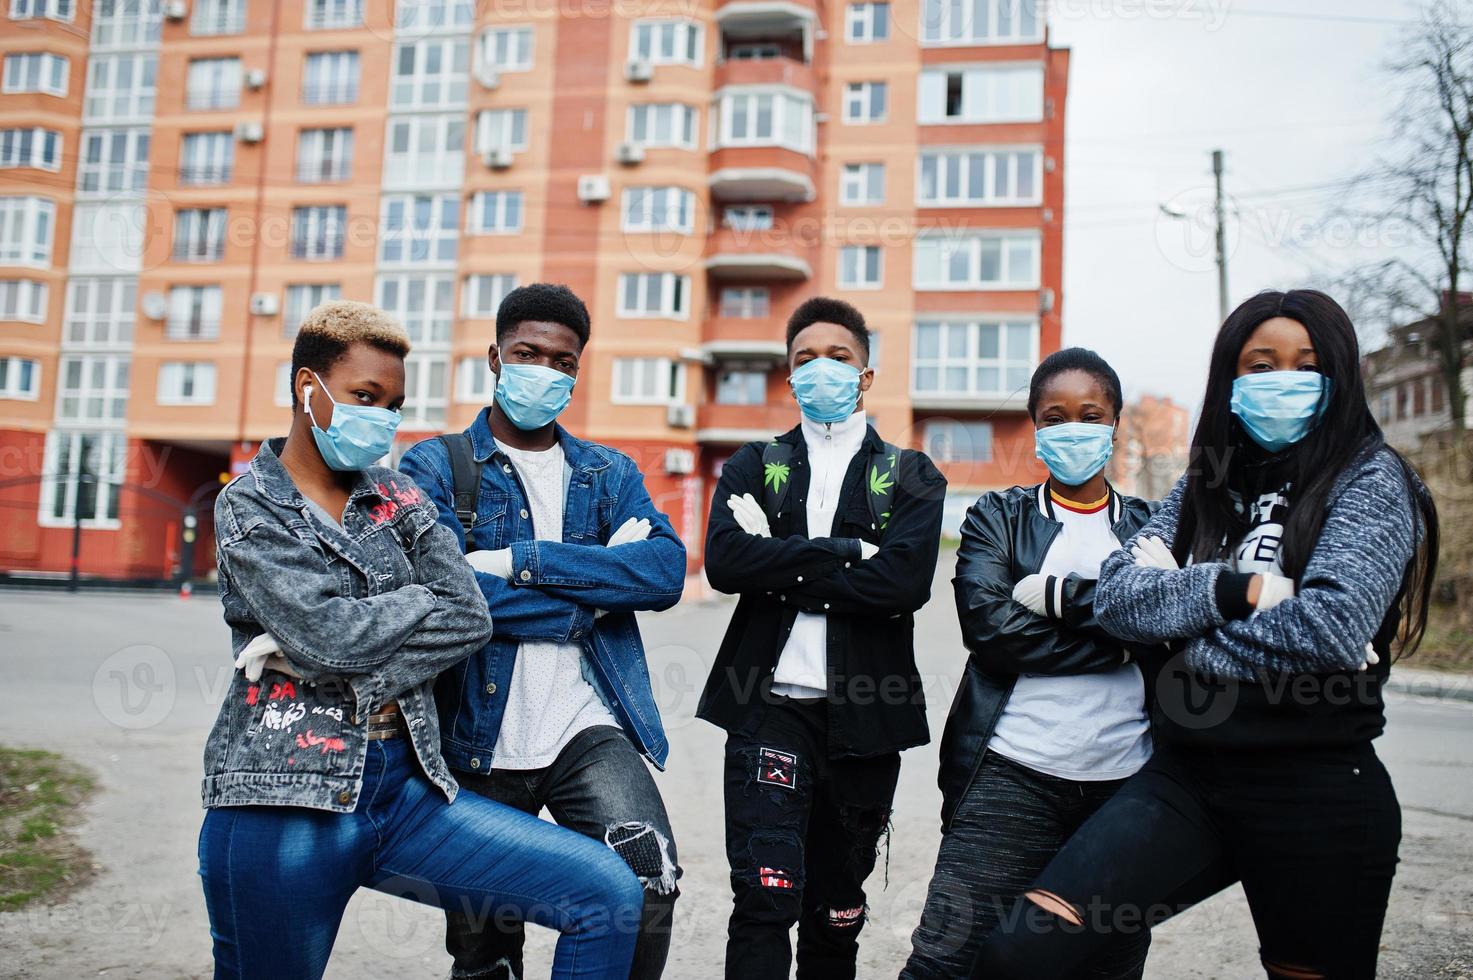 grupo de amigos adolescentes africanos contra a rua vazia com construção usando máscaras médicas protegem contra infecções e doenças quarentena de vírus coronavírus. foto